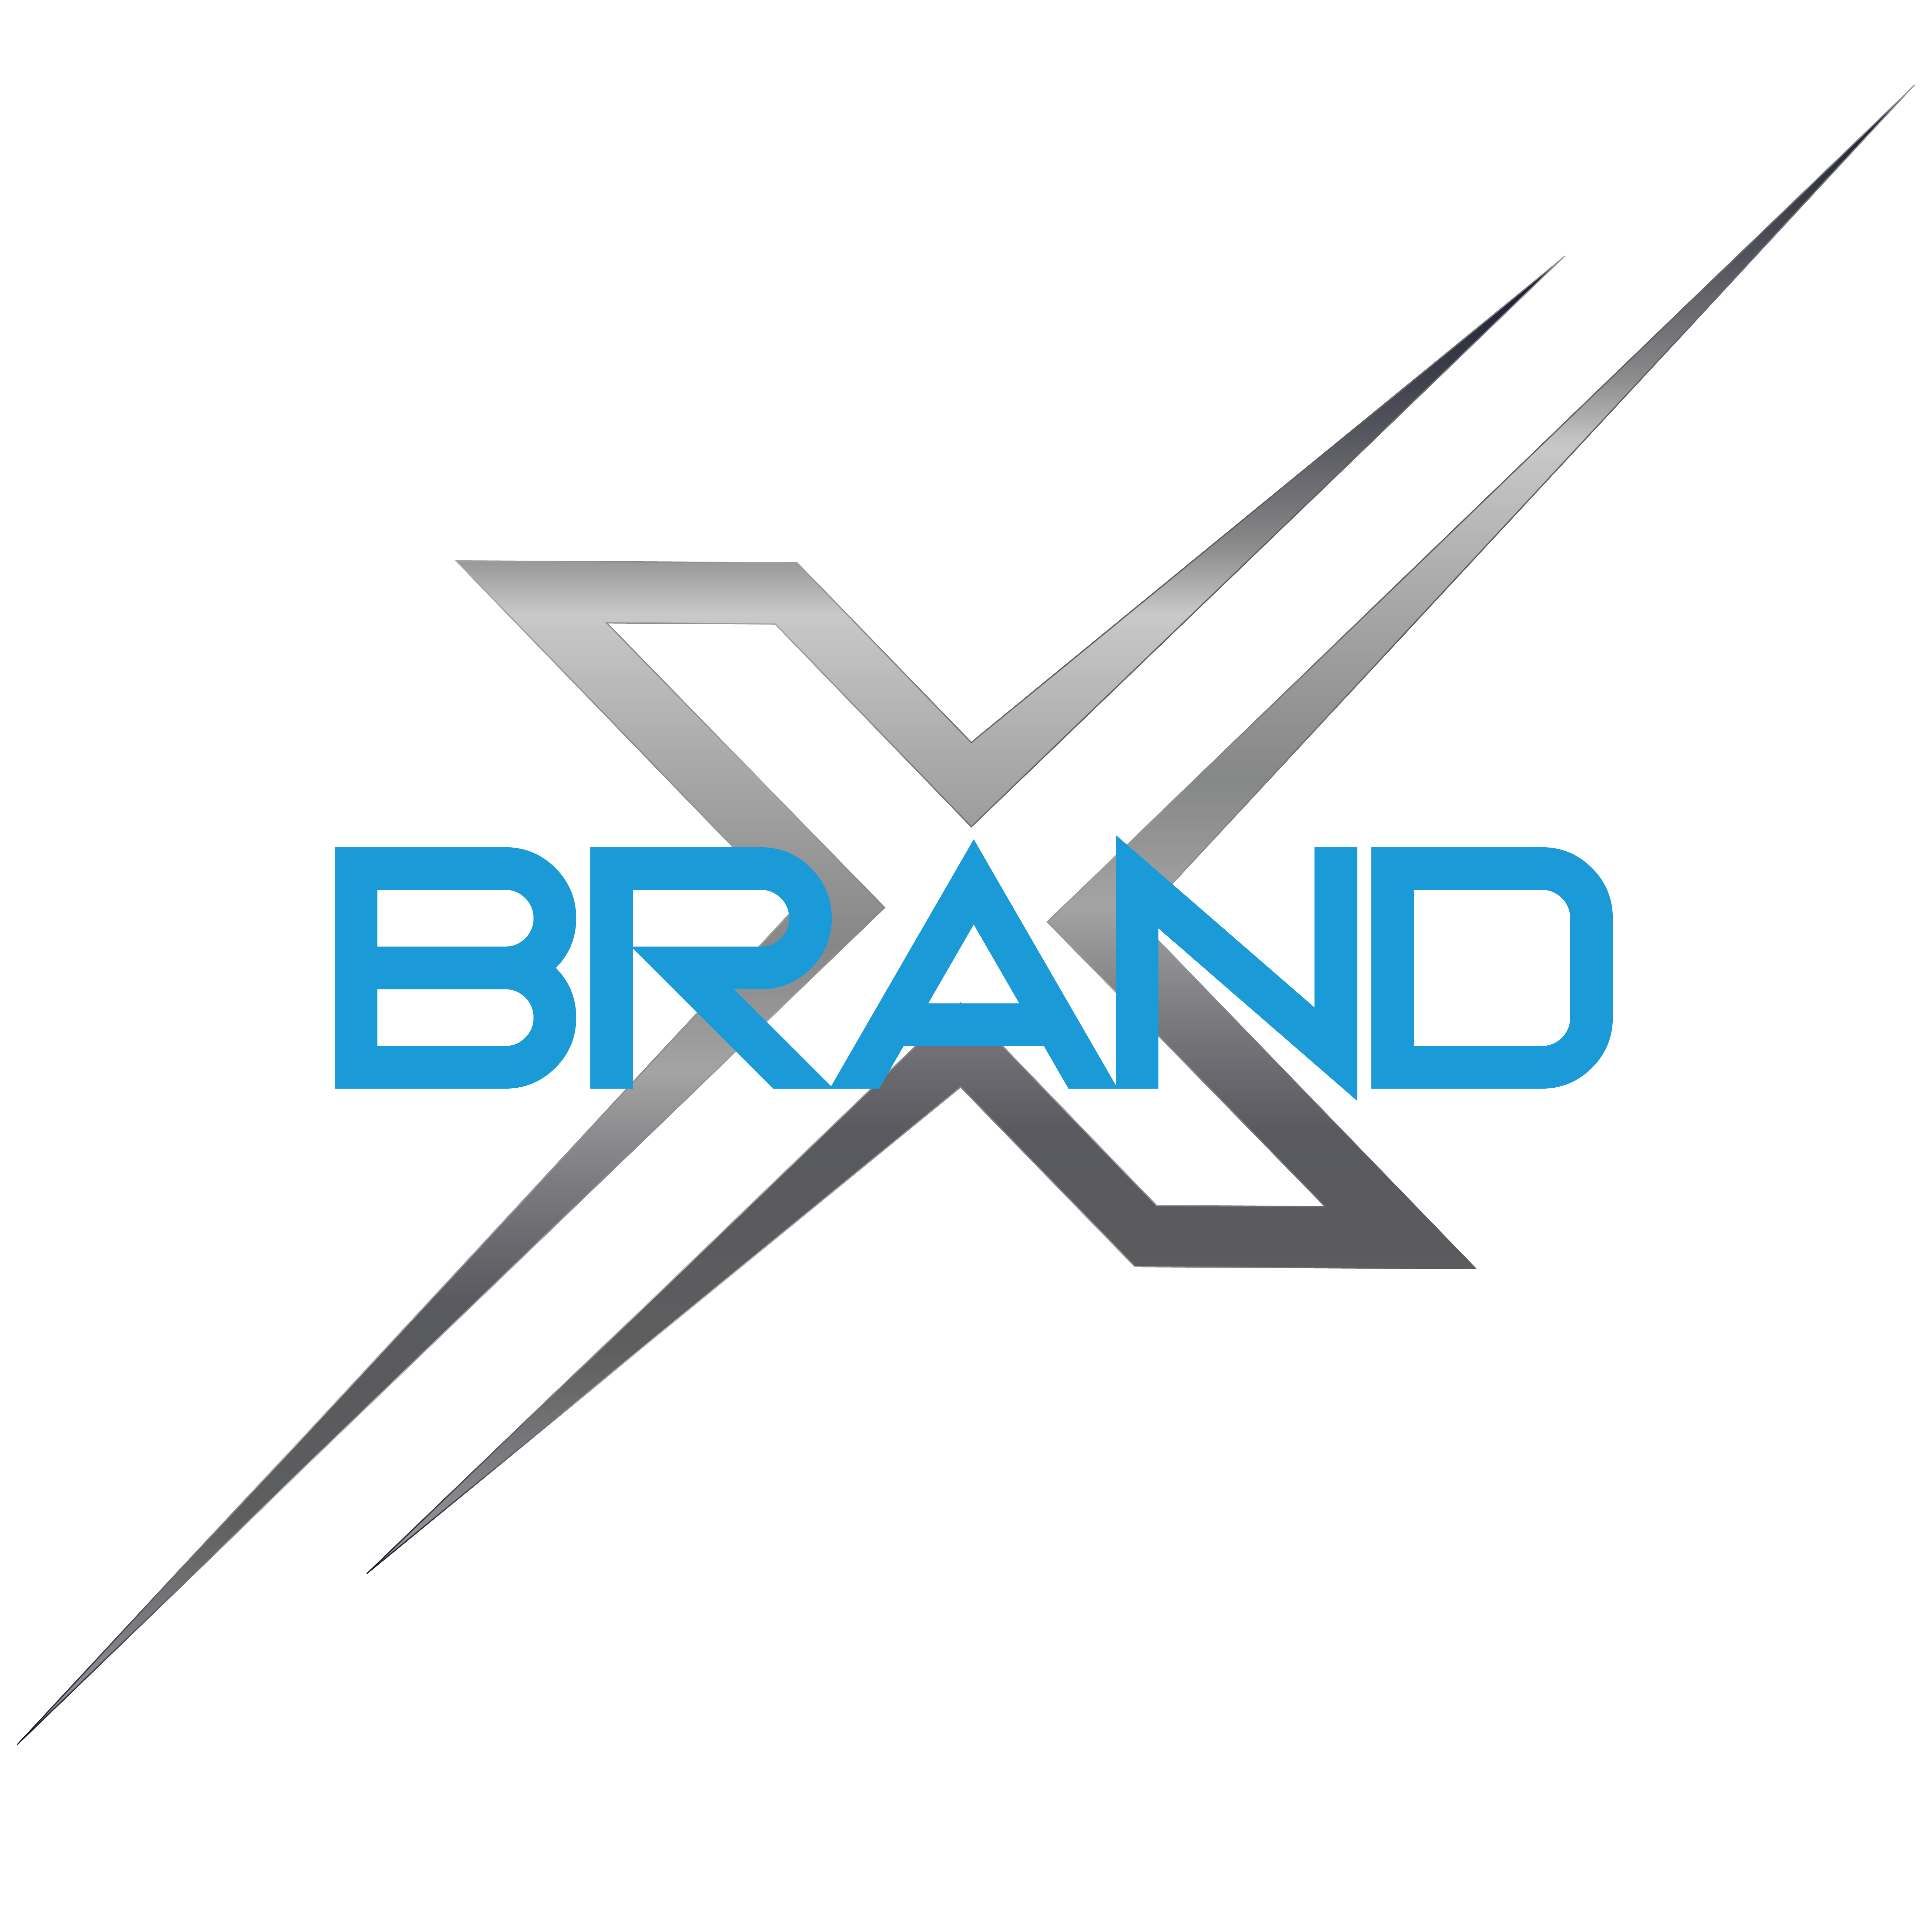 Brand X Expo